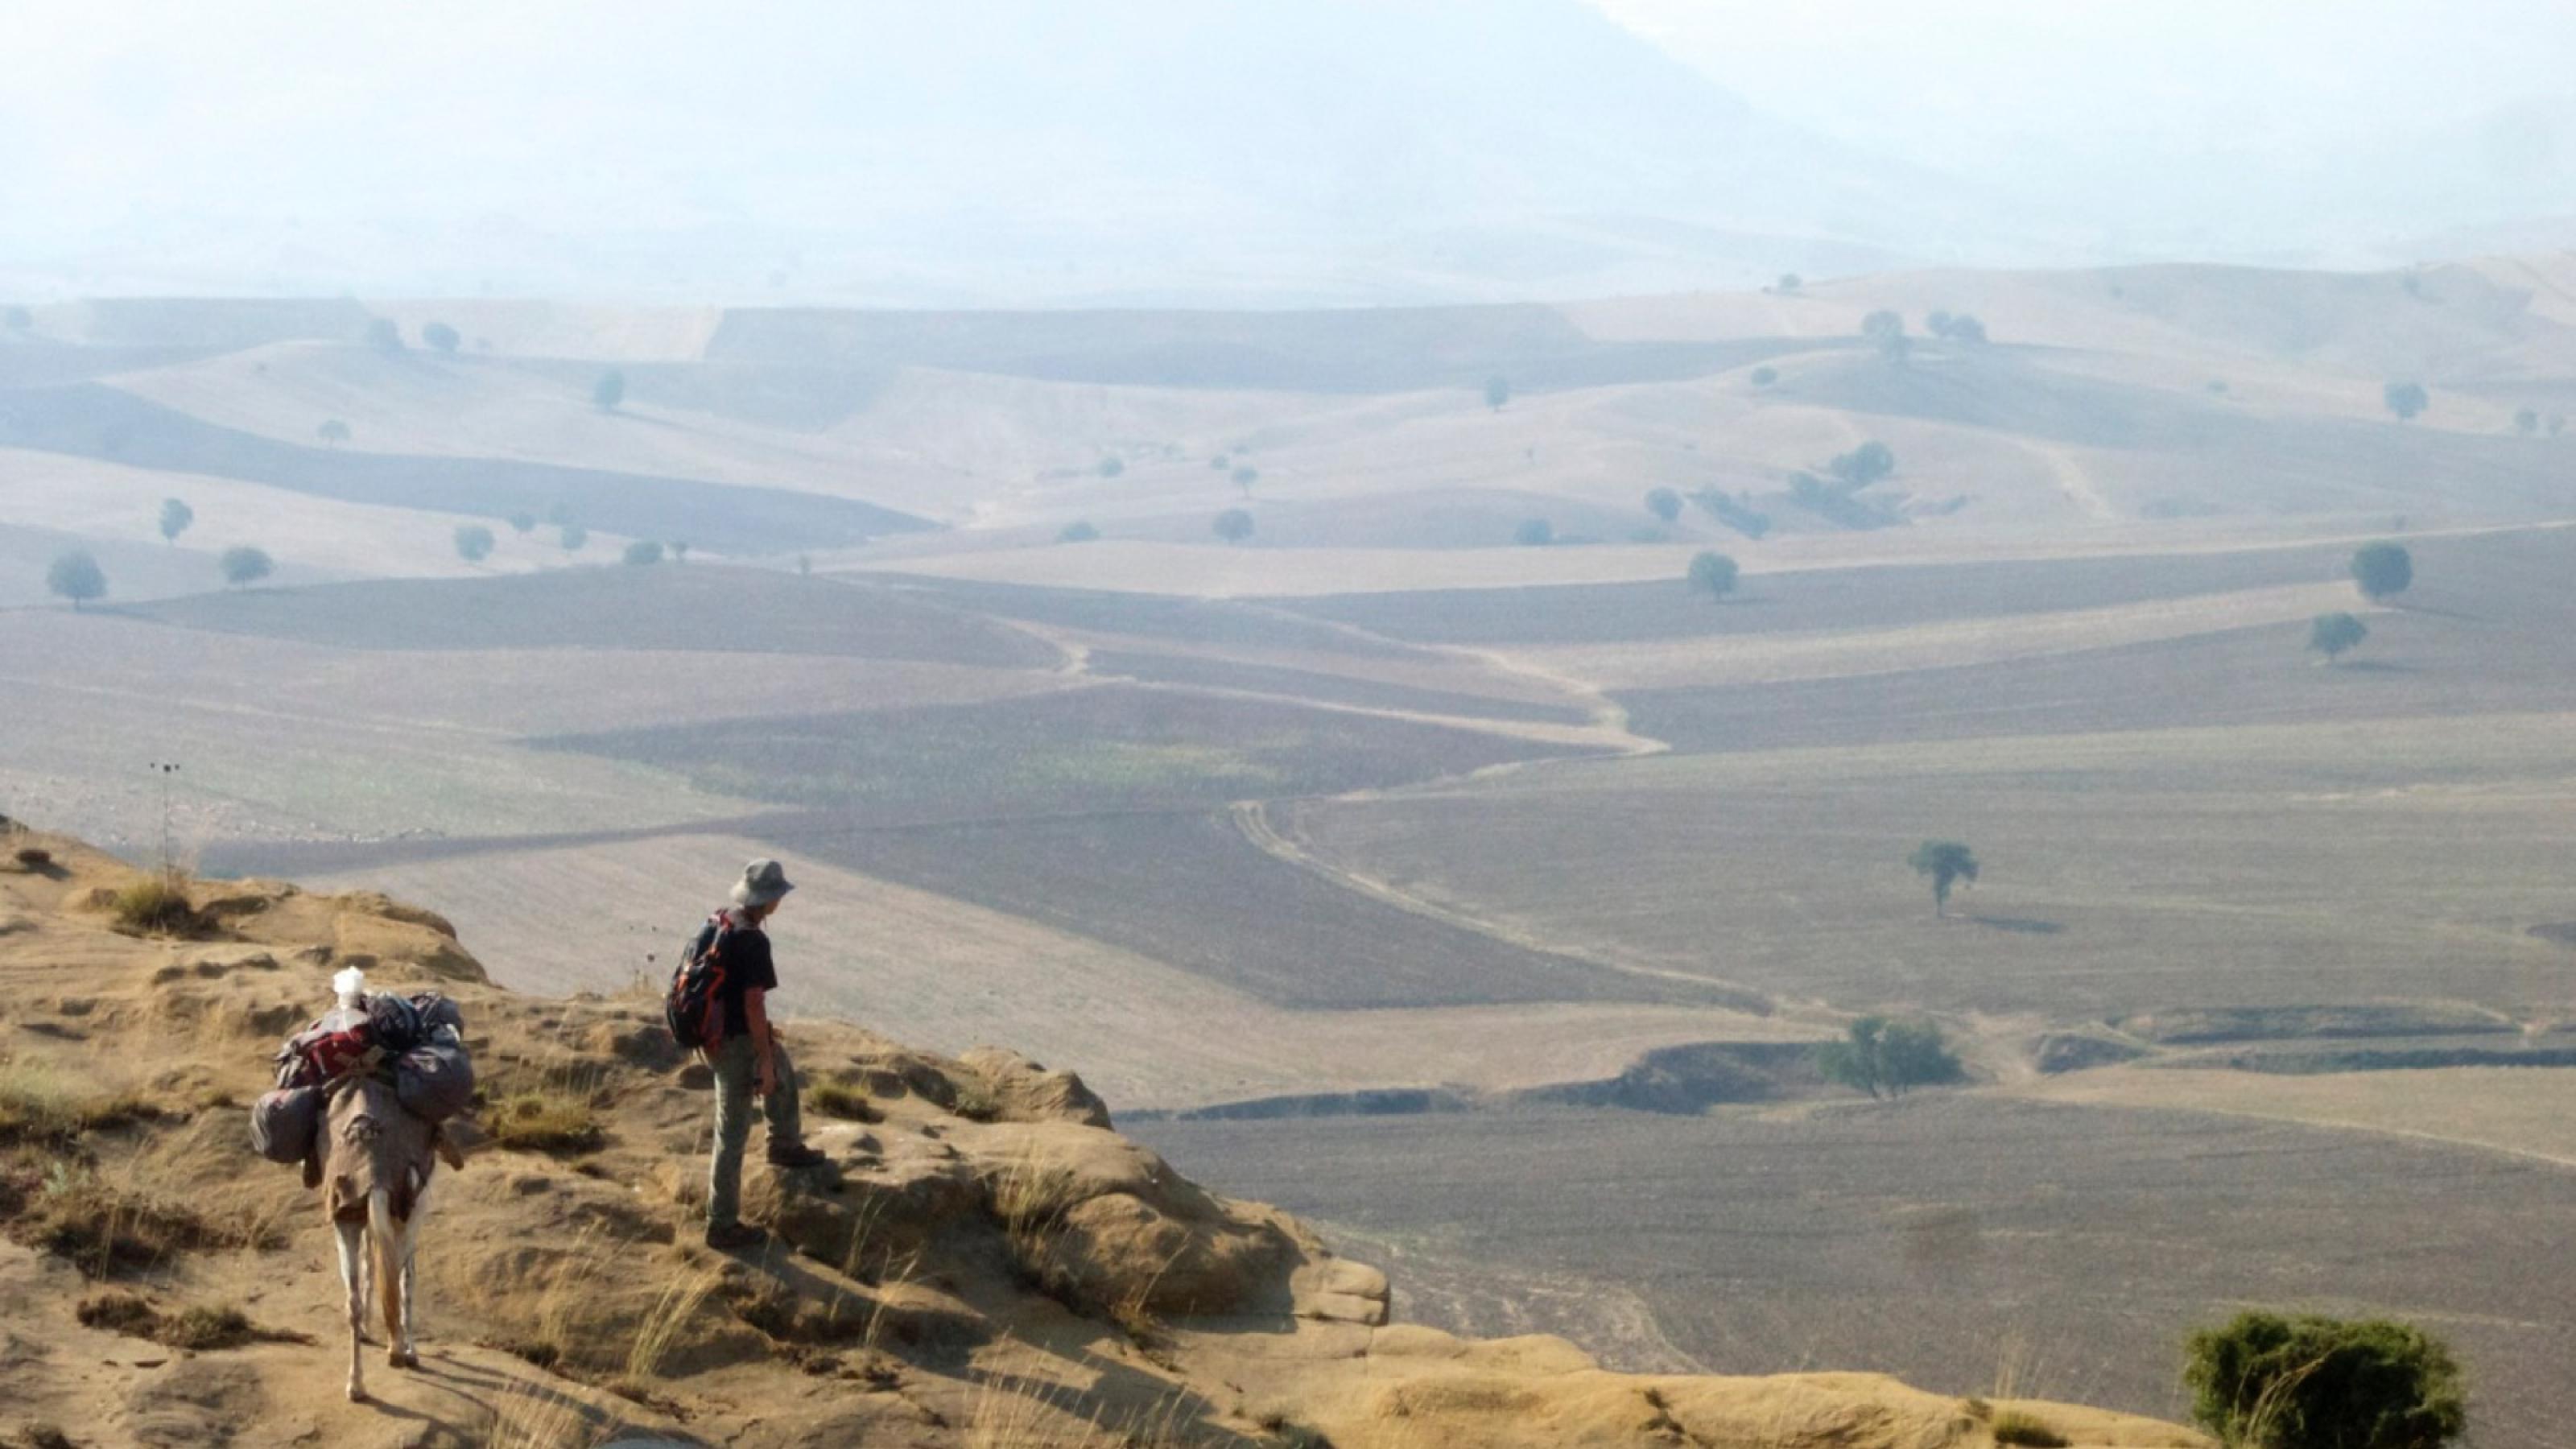 Der Journalist Paul Salopek steht am Rand eines Berges und schaut in die Ferne. Dort sind viele Felder zu erkennen.